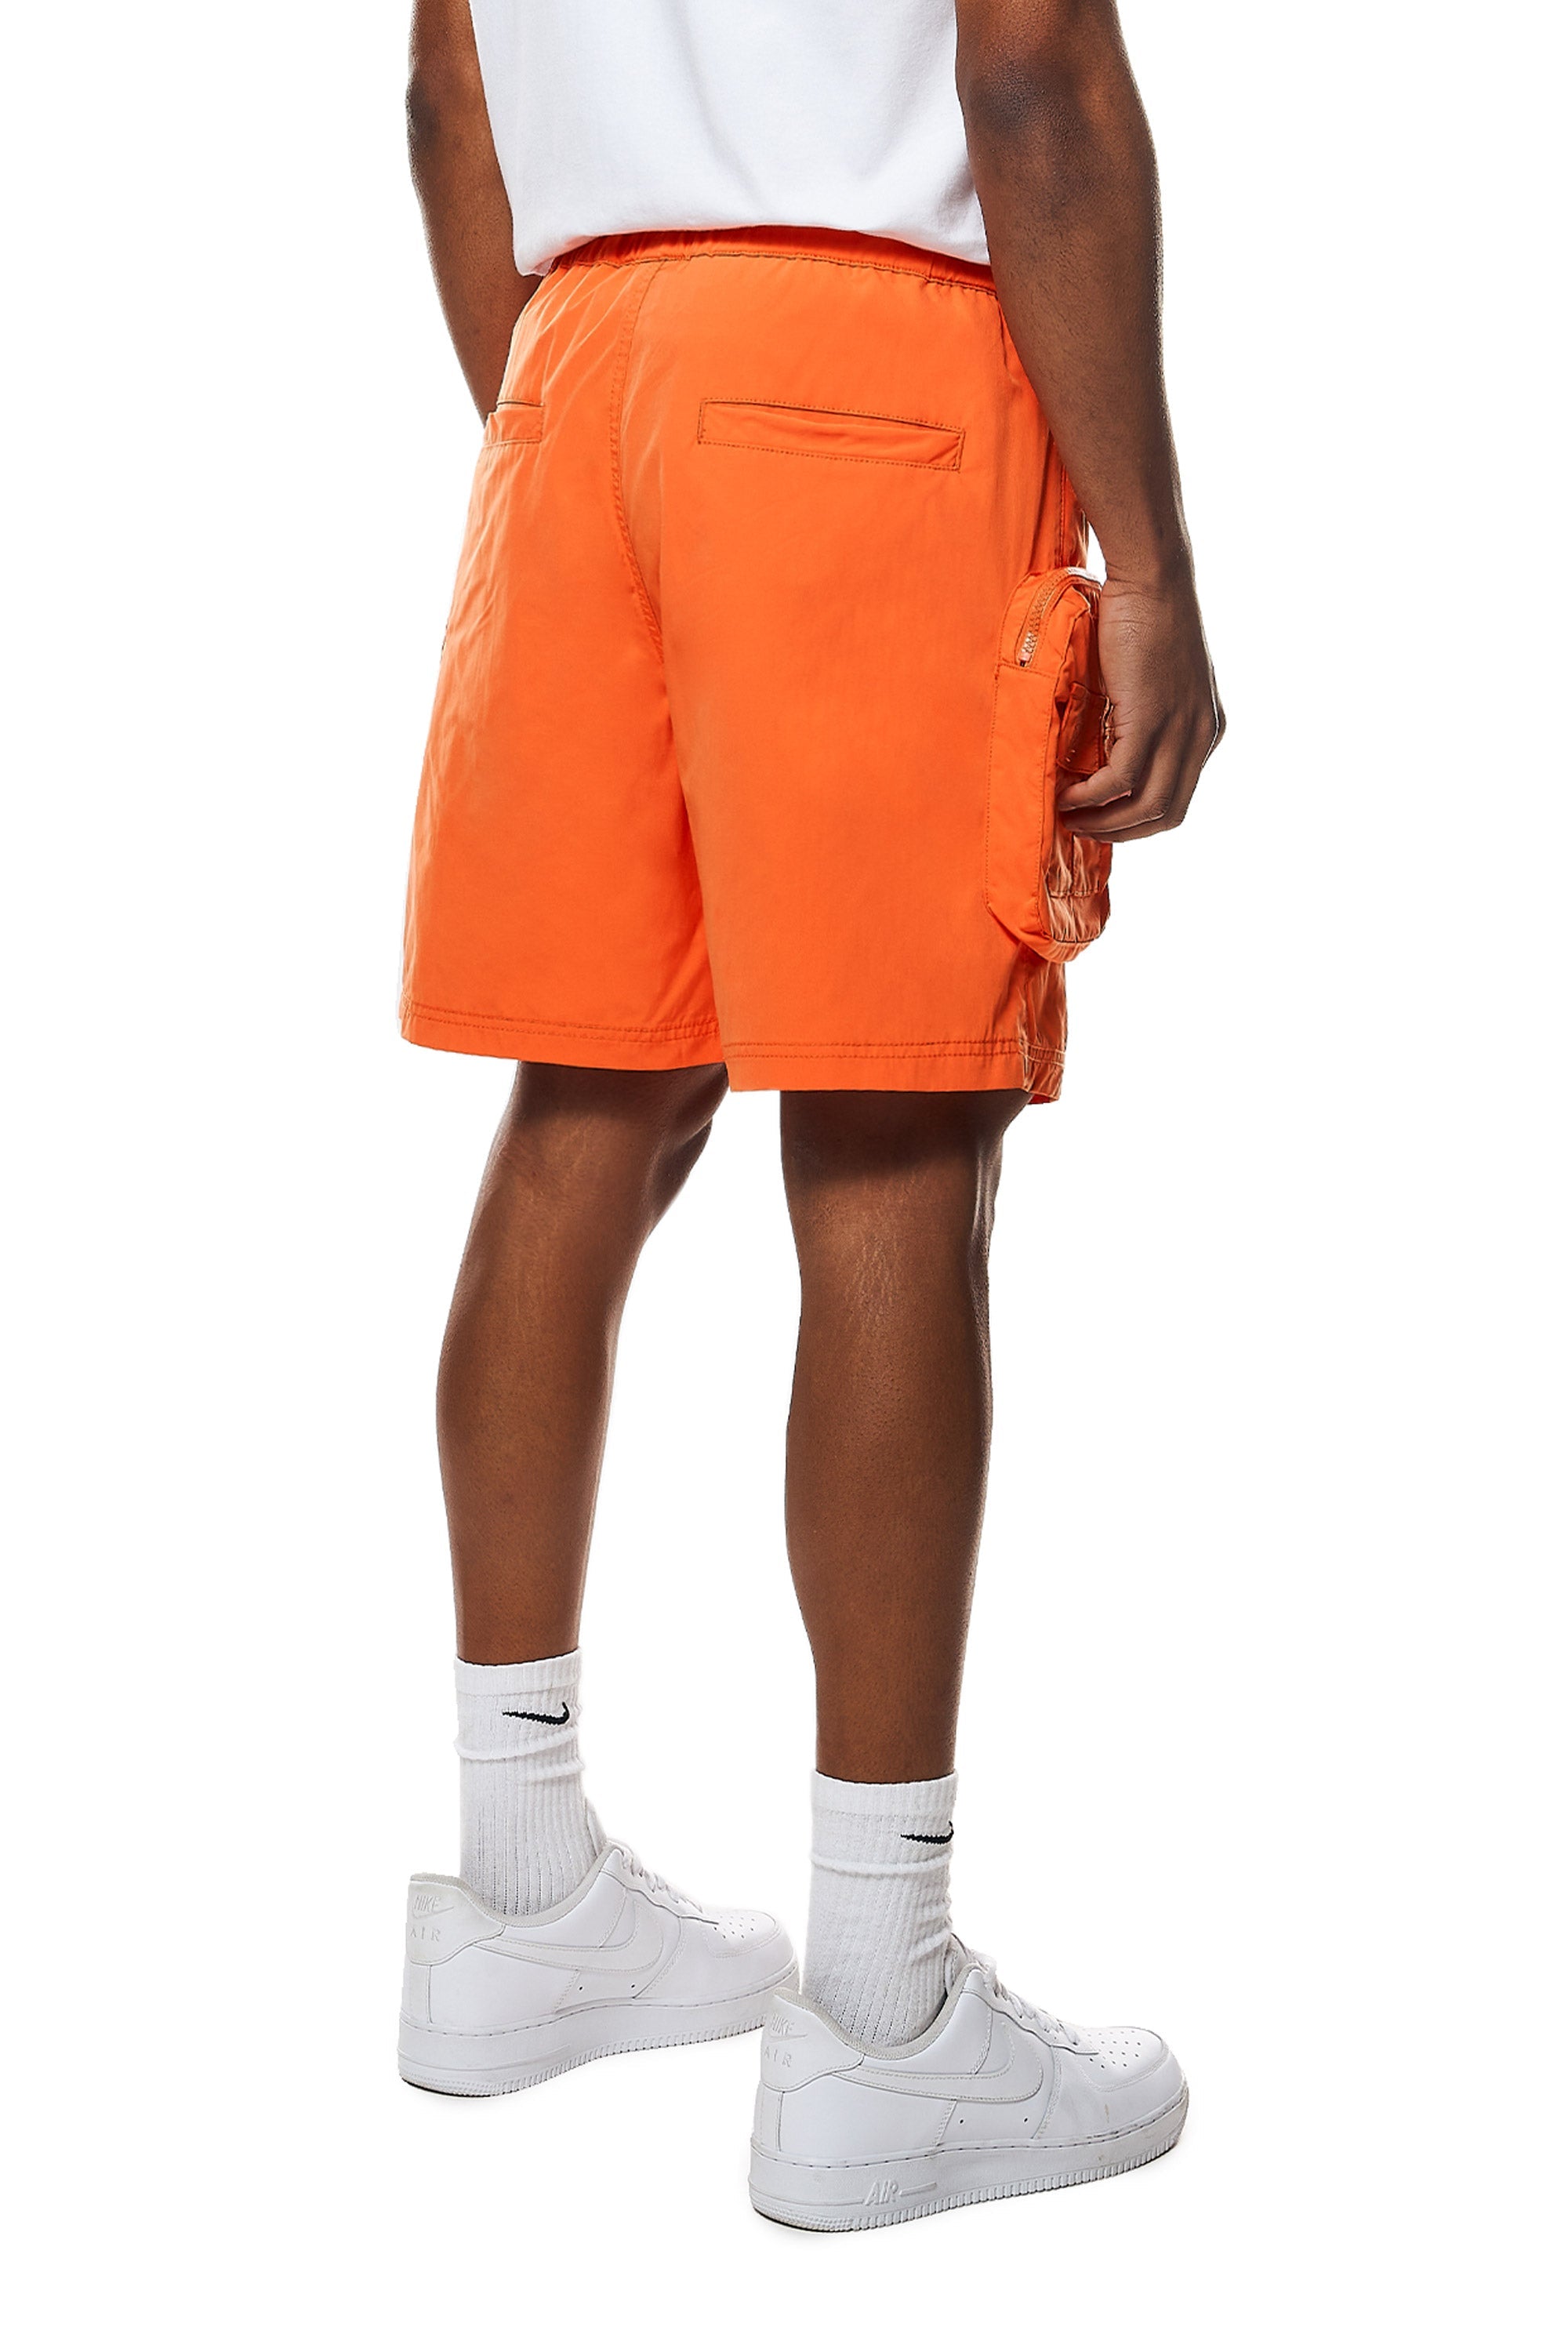 Printed Utility Lounge Windbreaker Shorts - Orange